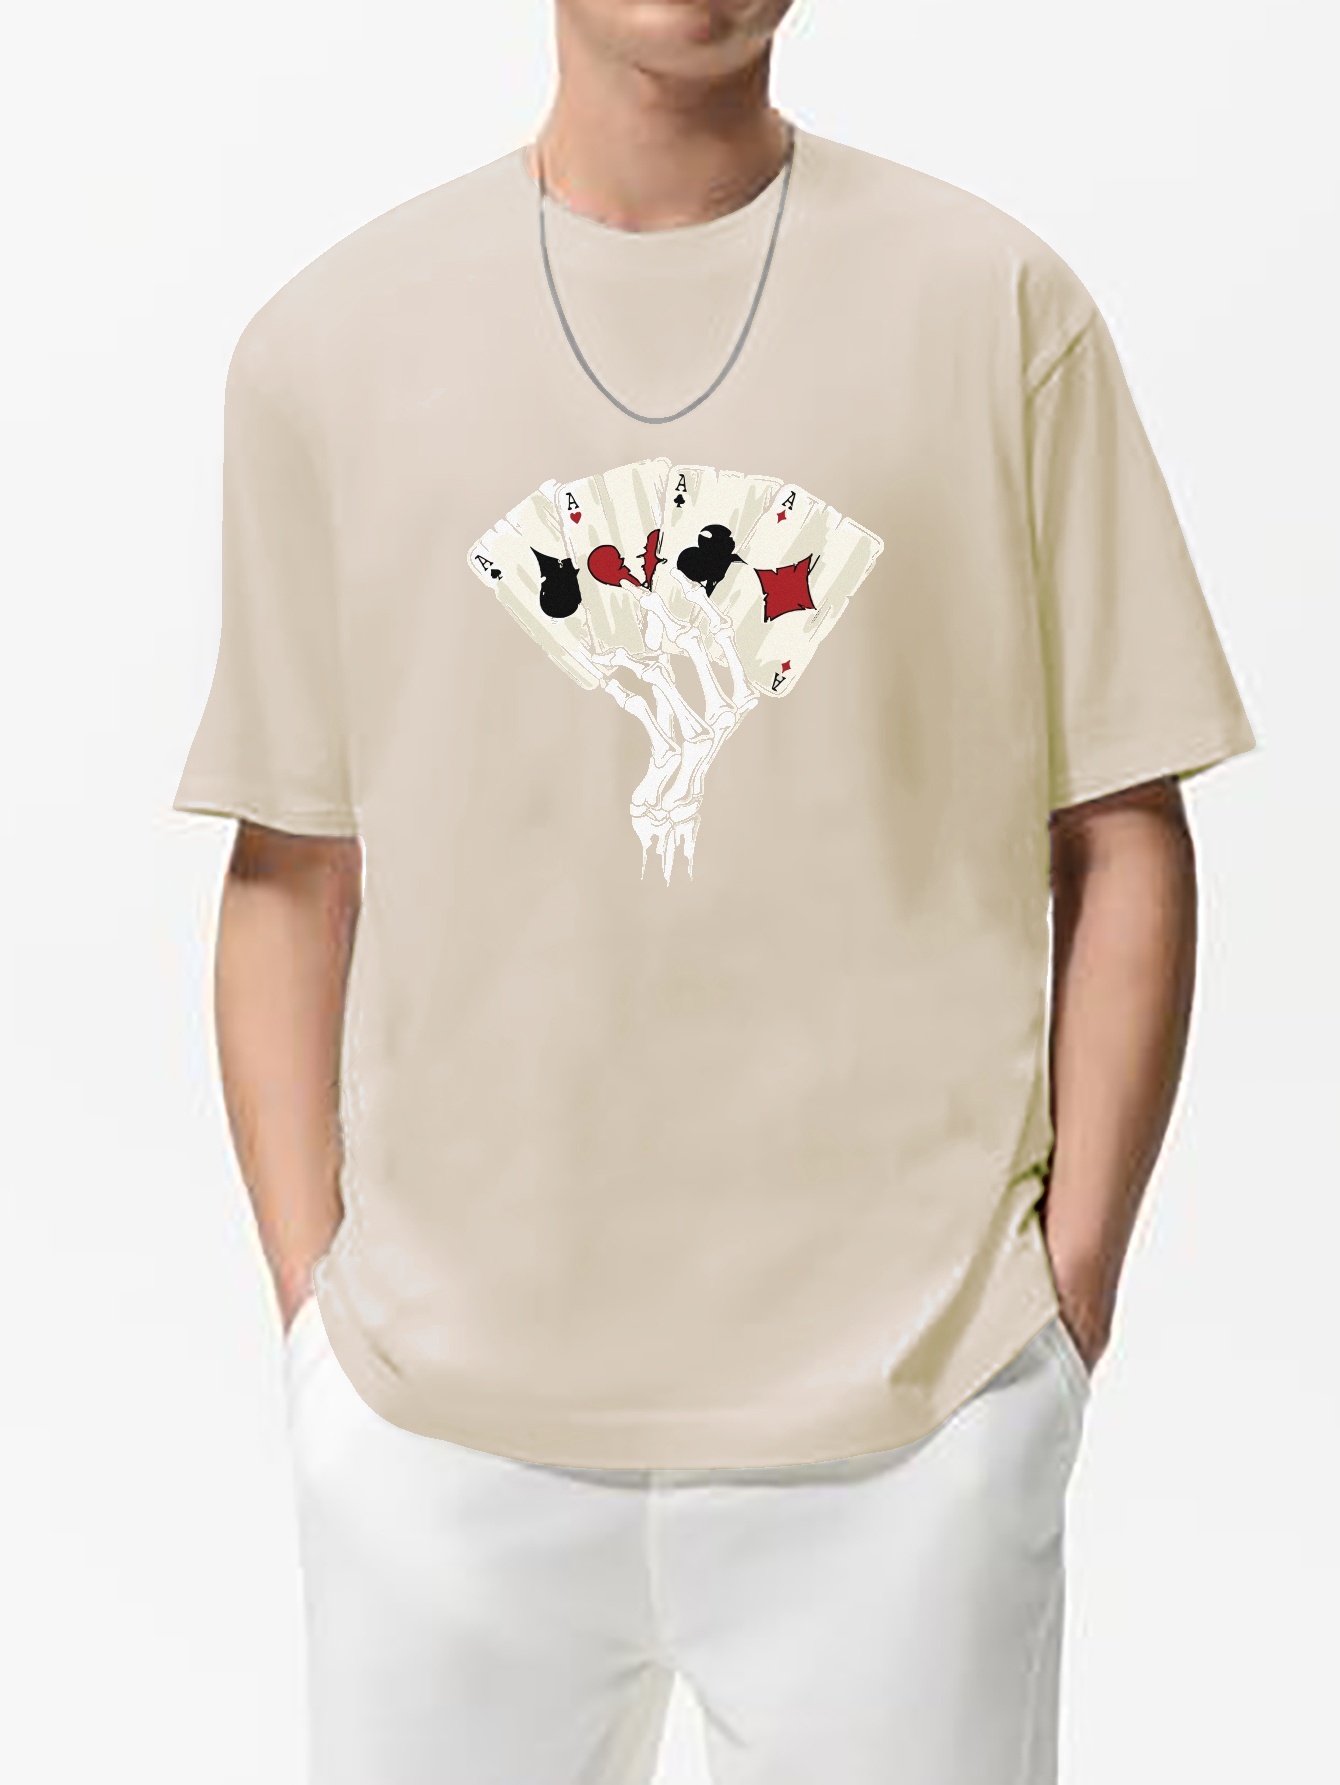 Trendy T-shirt, Men's Poker Cards & Skeletal Hand Graphic Print T-shirt  Oversized Tees Short Sleeve Tops For Summer, Men's Clothing, Plus Size -  Temu Bahrain